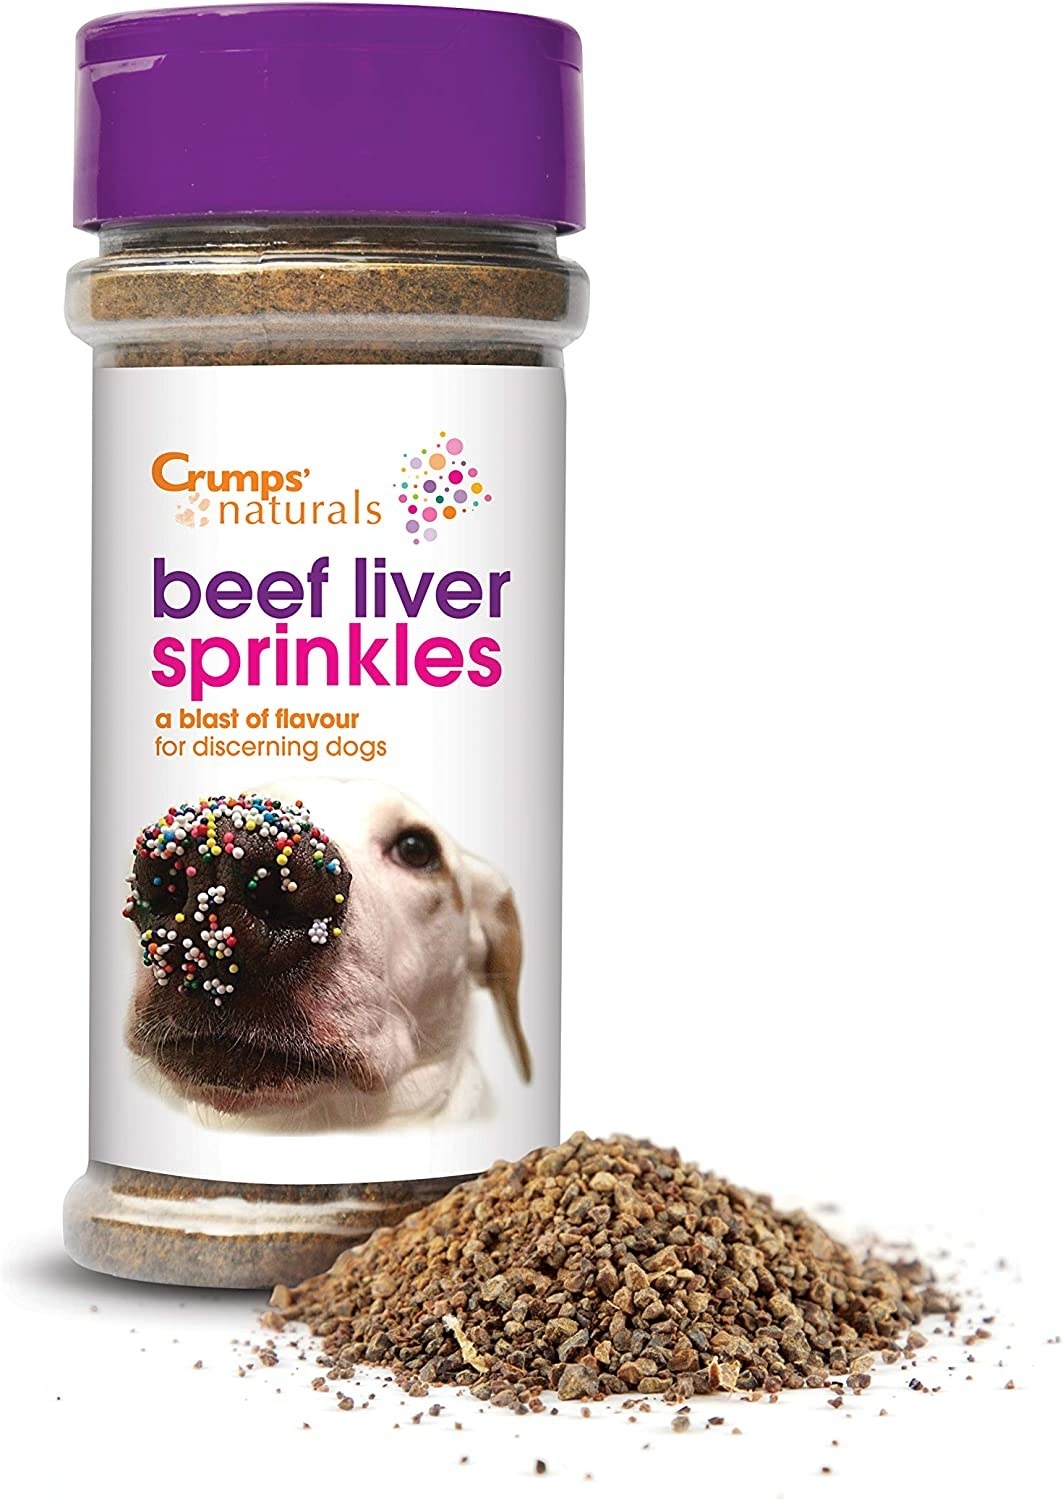 A bottle of beef-liver sprinkles